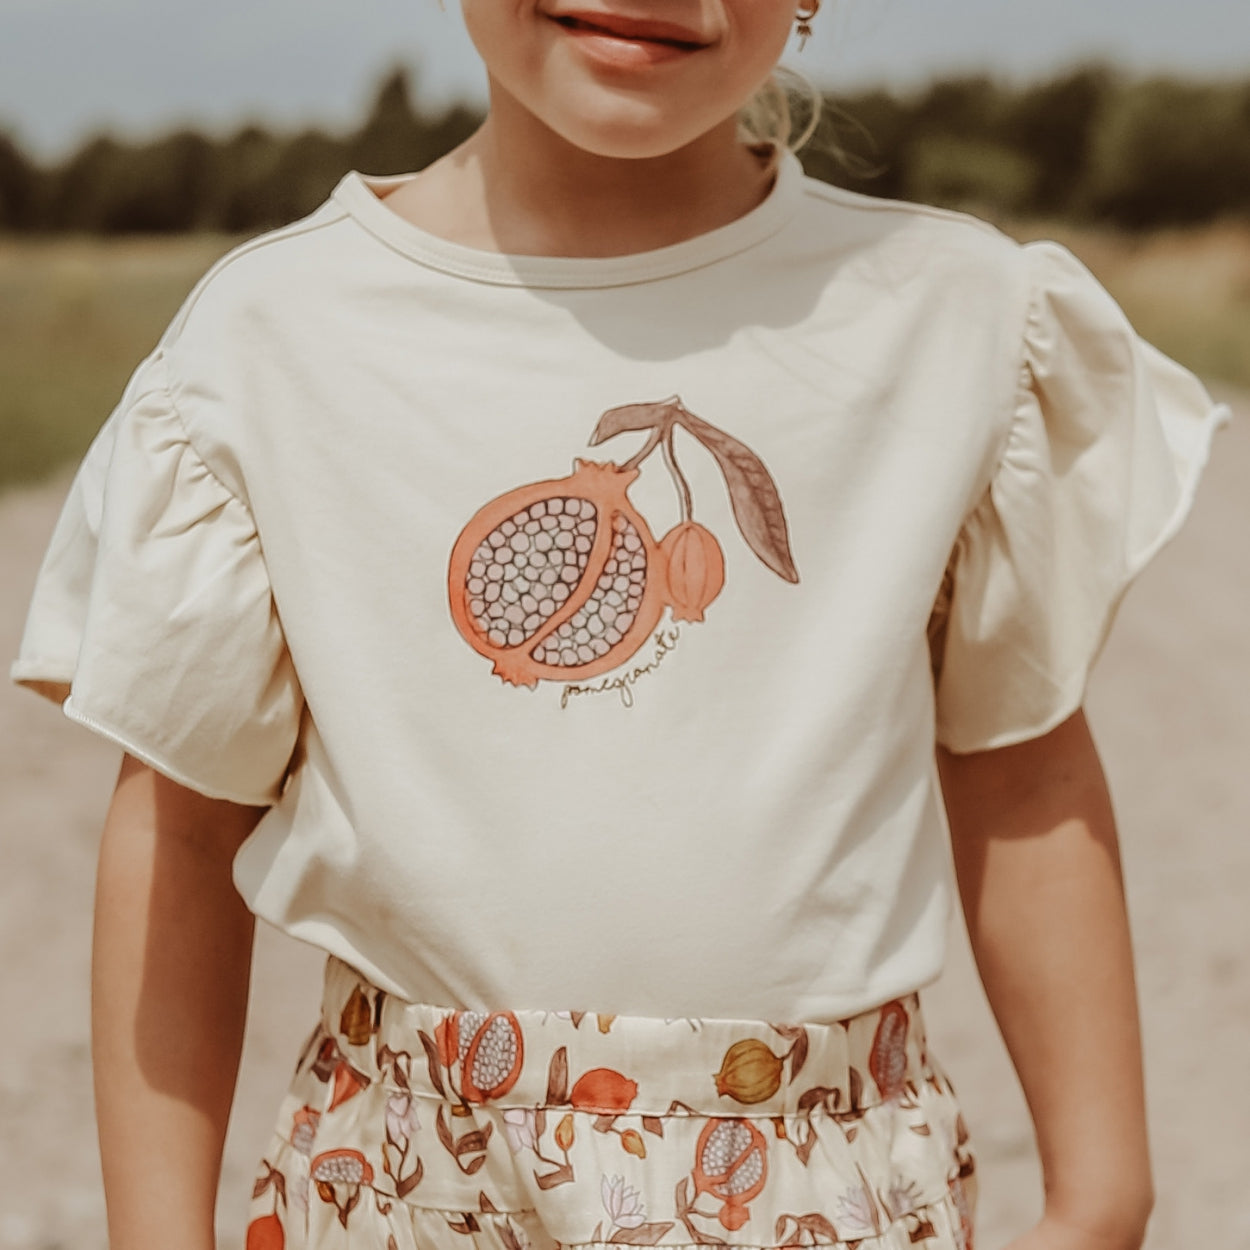 Meisjes T-Shirt Pomegranate | Jazz van Your Wishes in de kleur Honeycomb in maat 128.